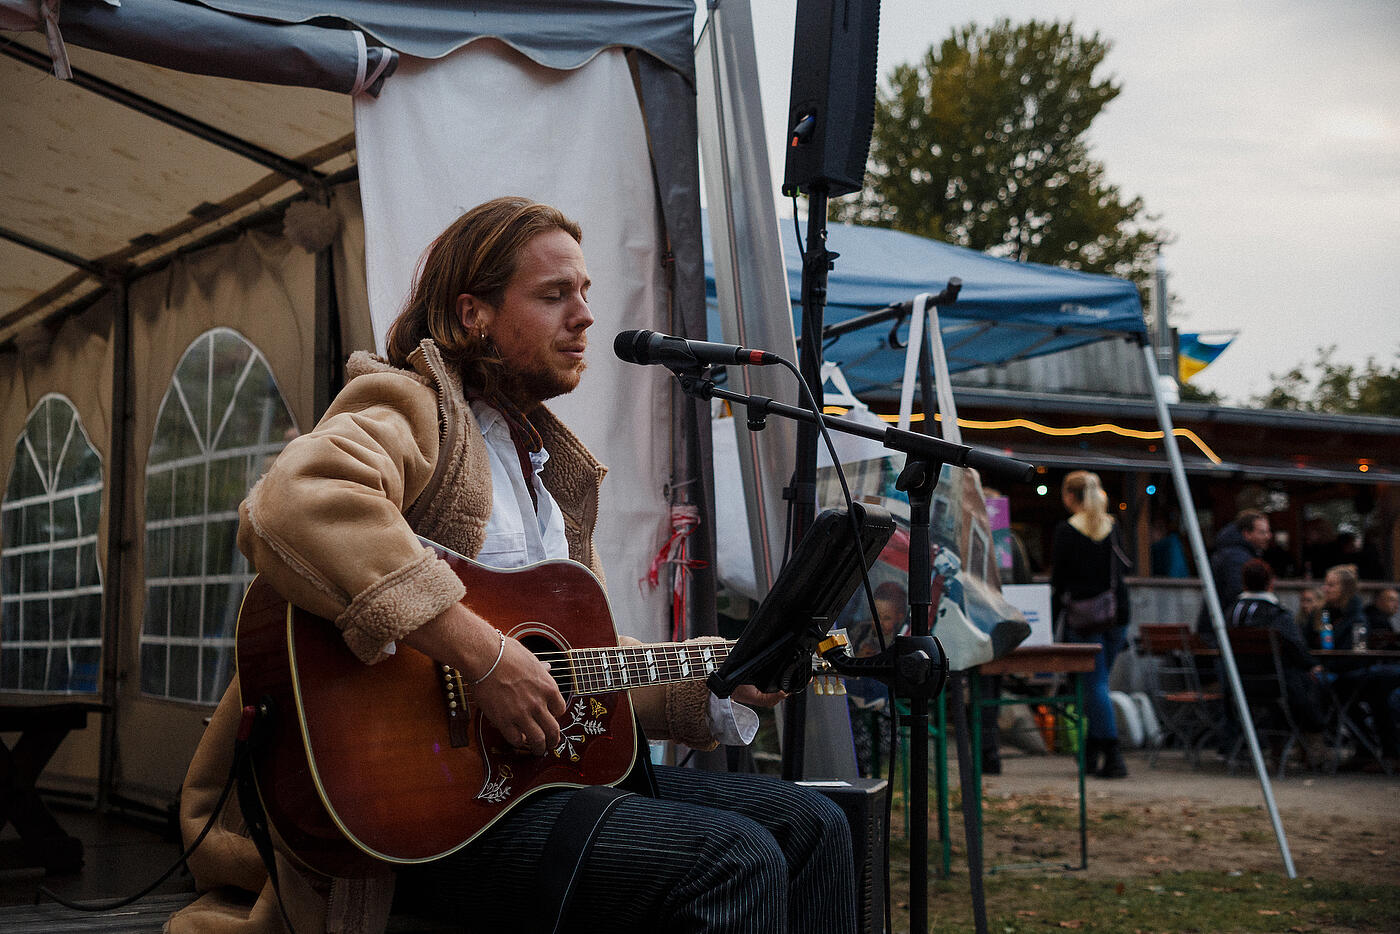 Ein Musiker in brauner Lederjacke sitzt mit Gitarre vor einem Zelt und singt in ein Mikrofon.